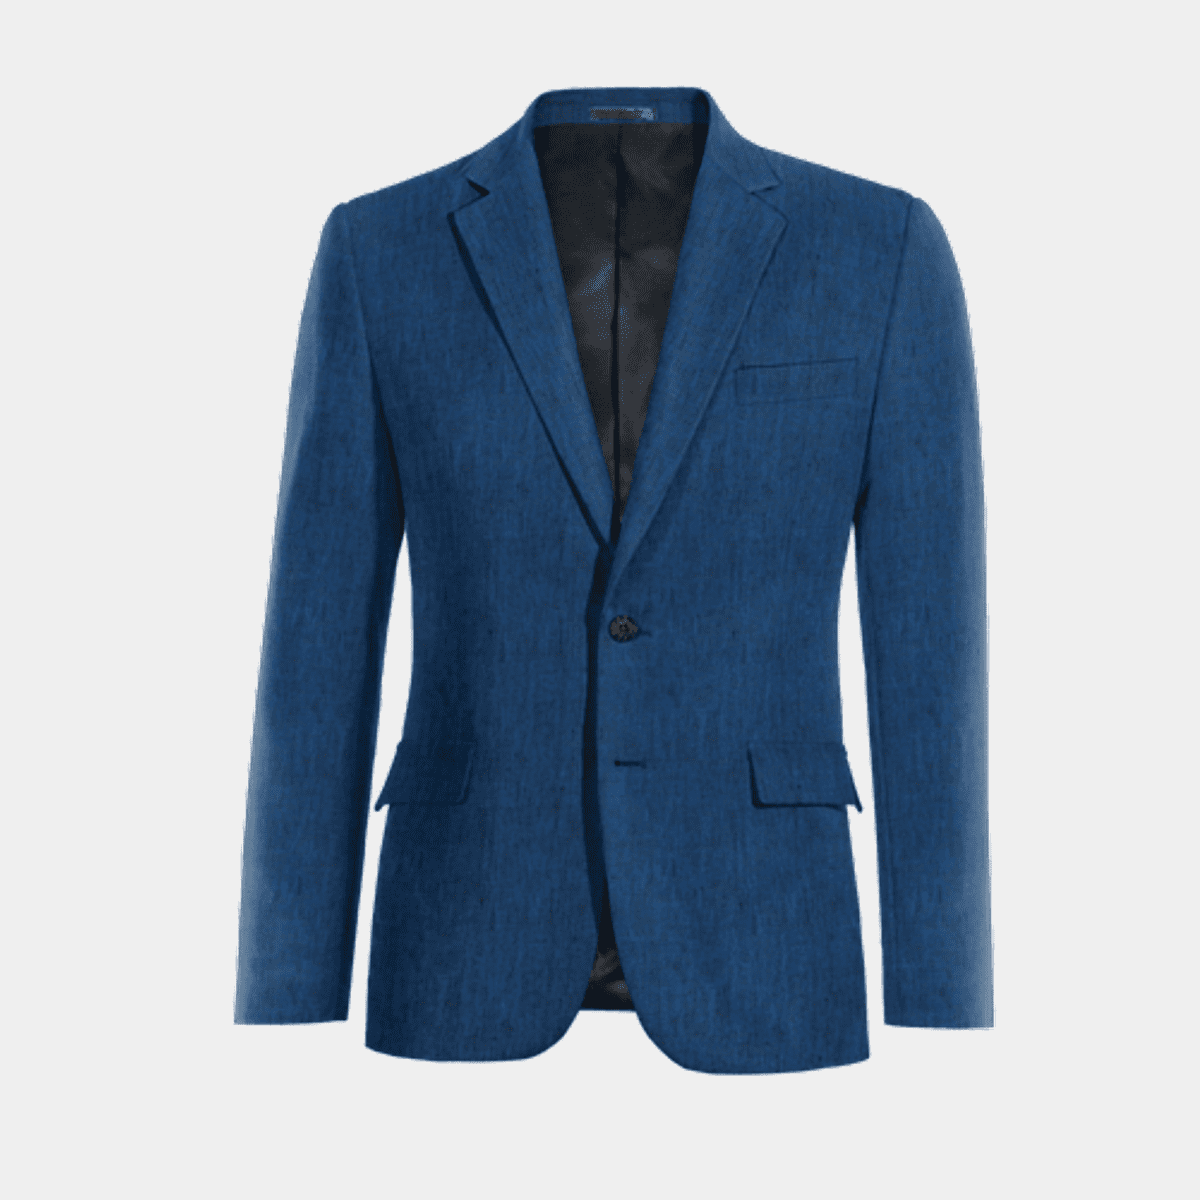 Royal Blue Linen Suit Jacket